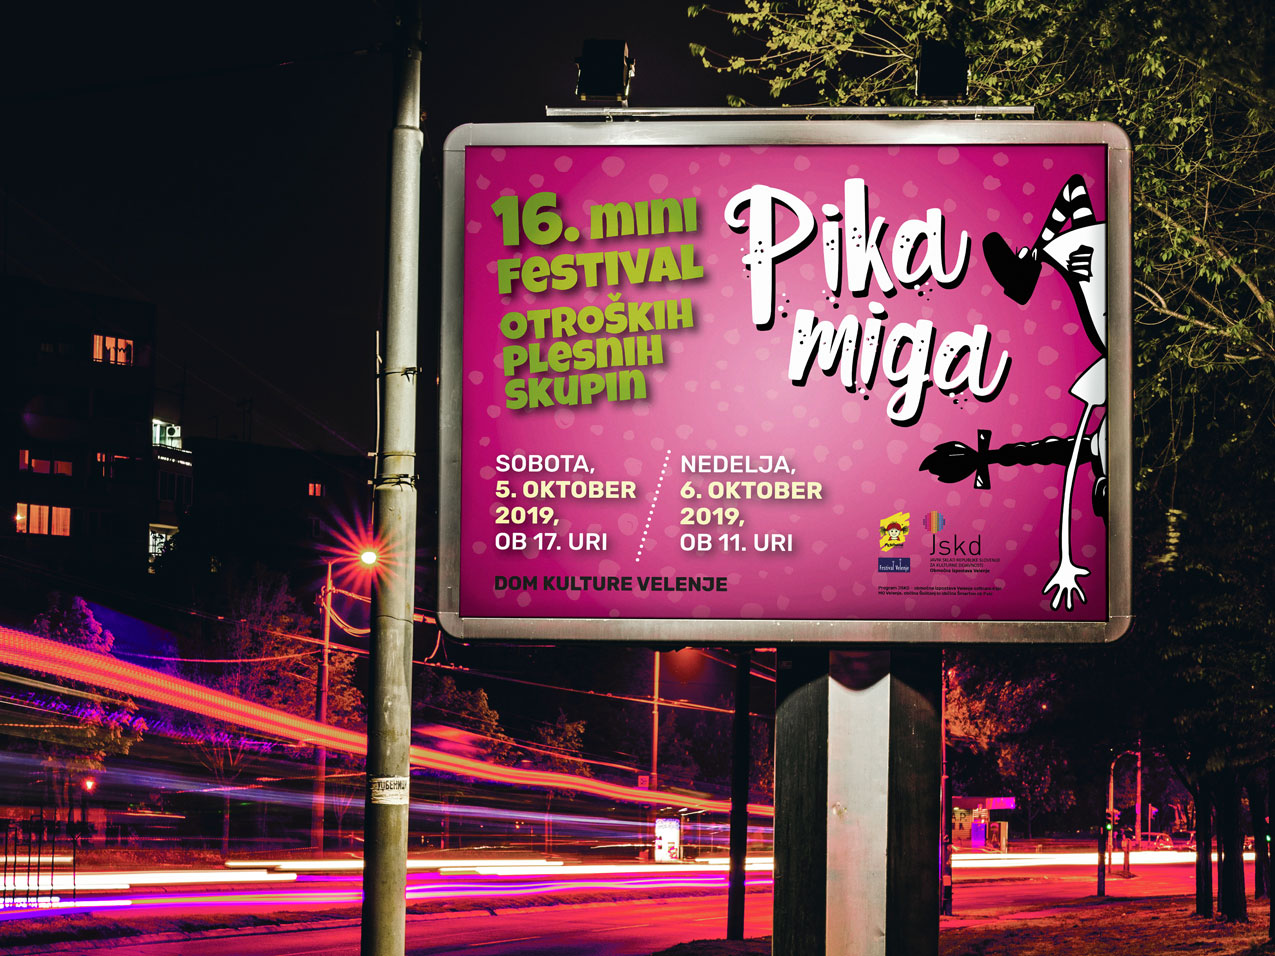 Mini plesni festival - Pika miga 2019